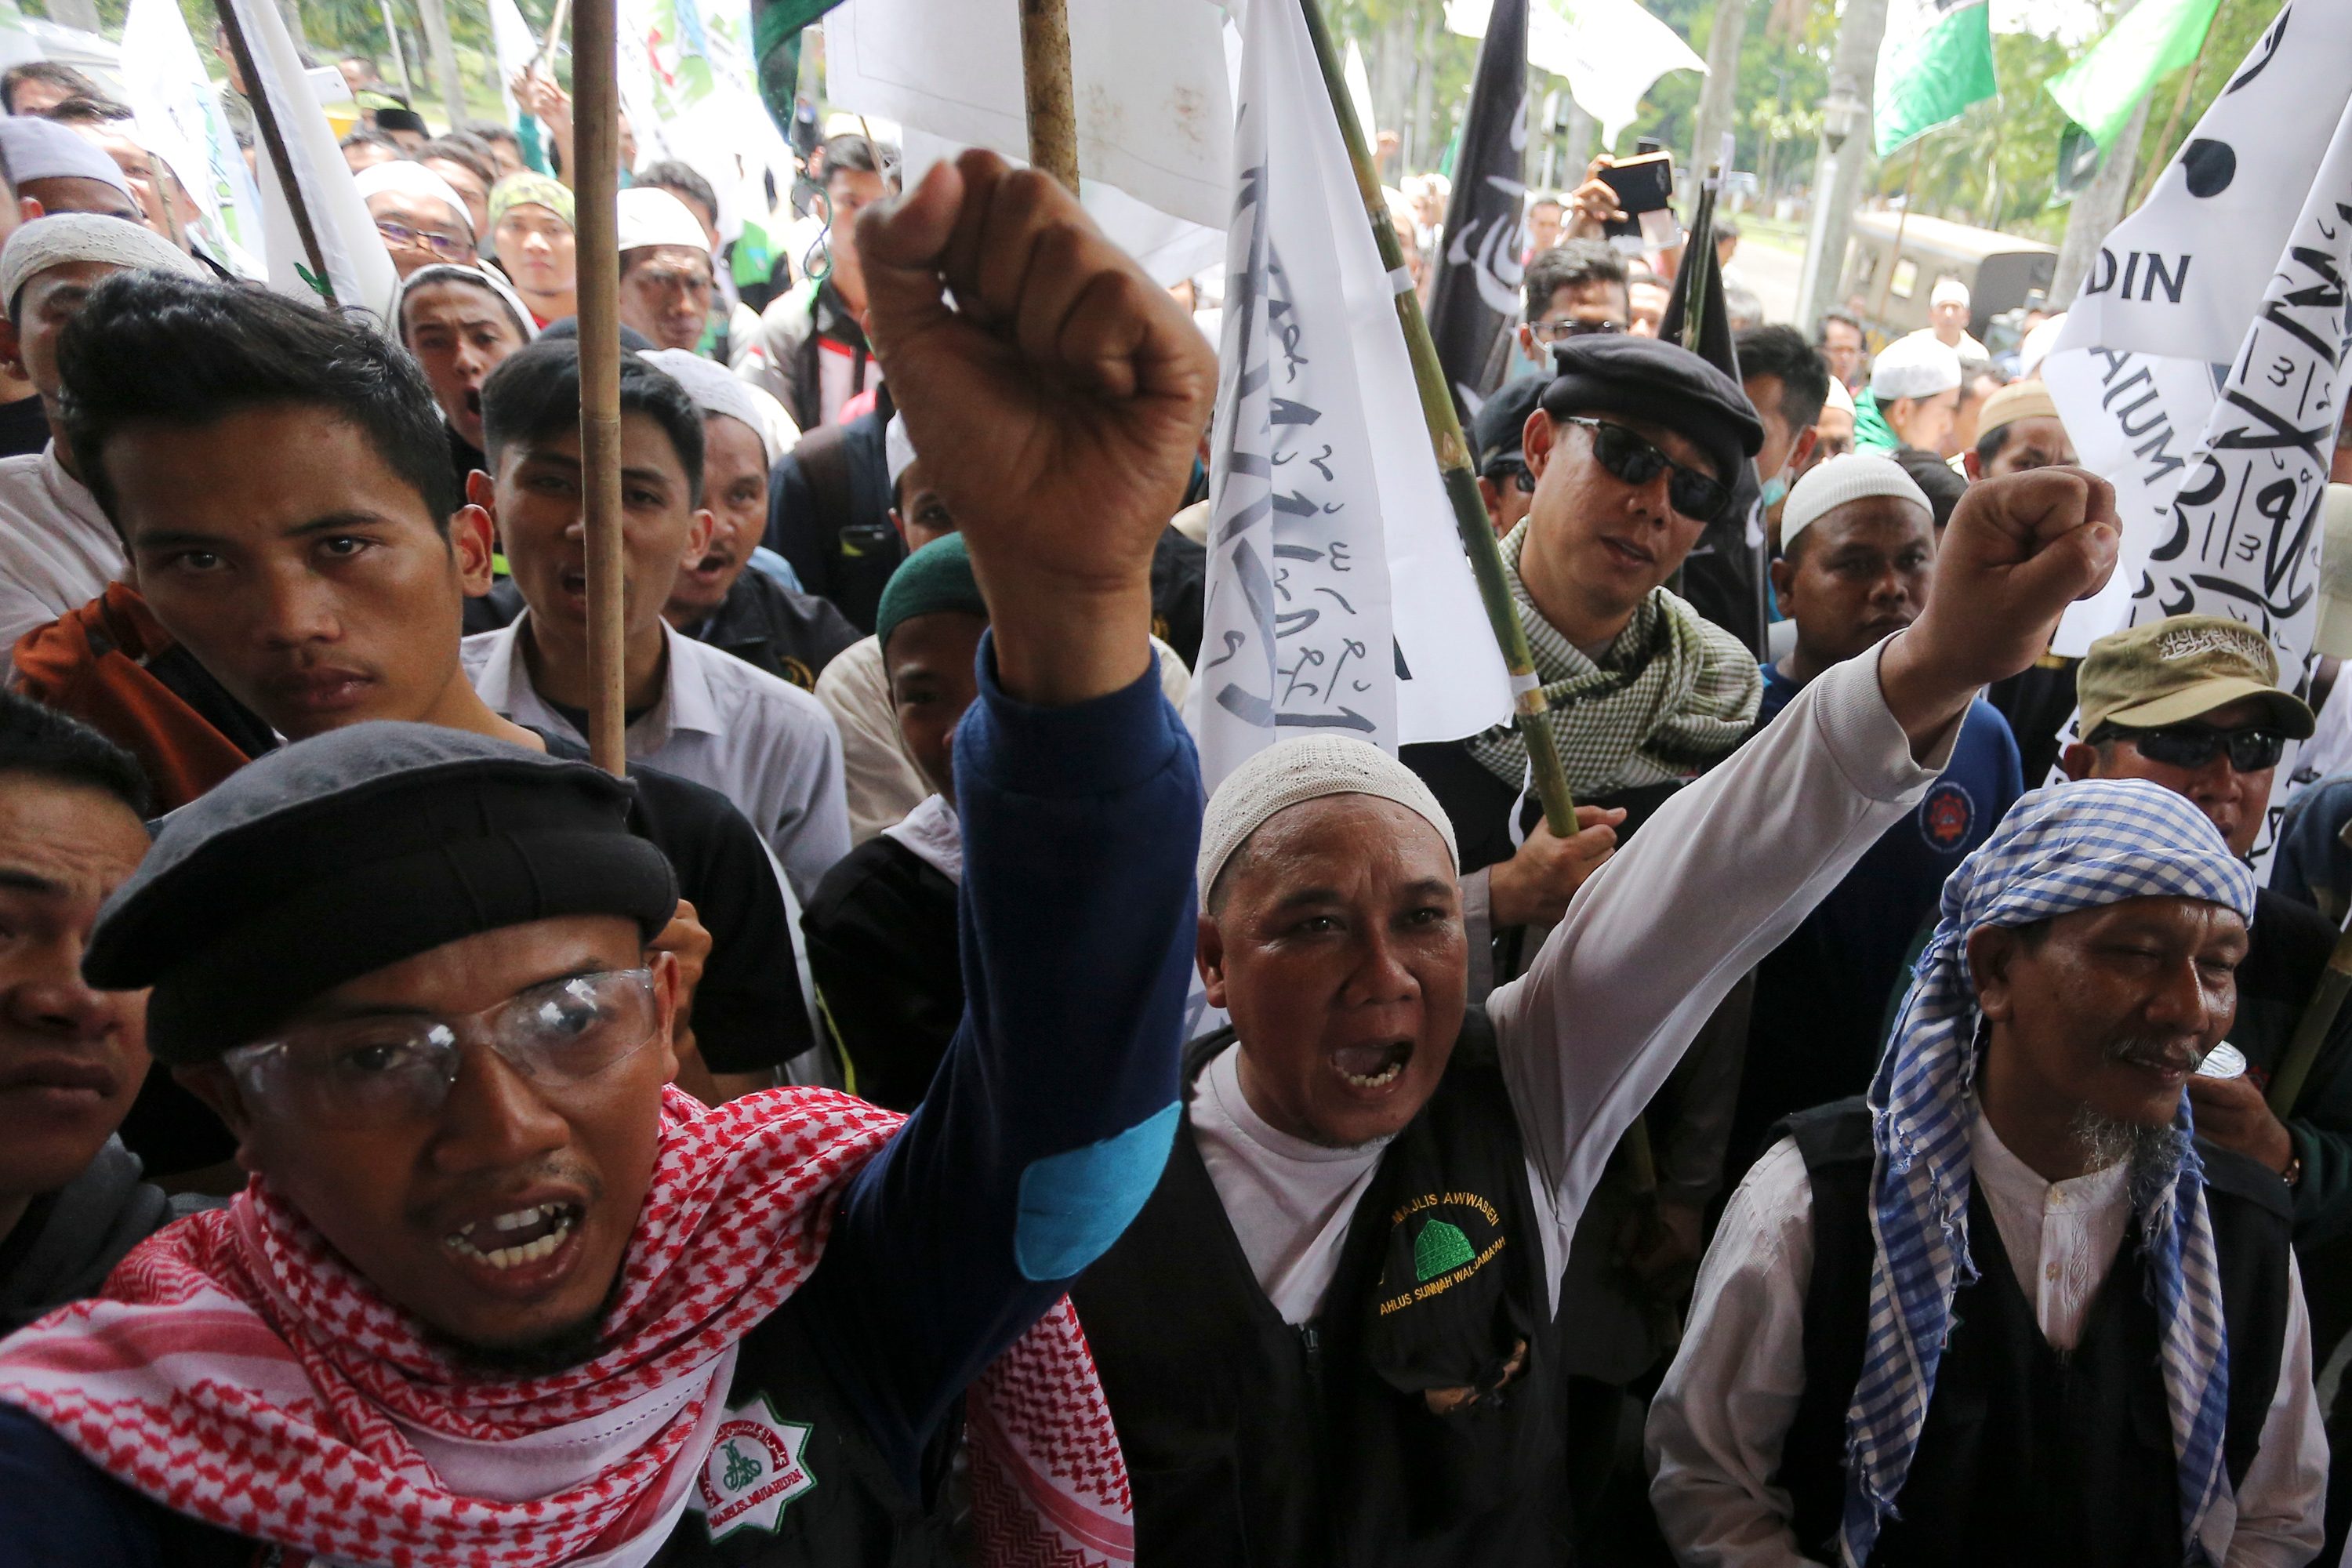 Ratusan umat Islam Sumaetra Selatan berunjuk rasa di halaman Kantor DPRD Sumsel, Palembang, Sumatera Selatan, pada 10 Oktober 2016. Aksi itu sebagai protes terhadap pernyataan Gubernur DKI Jakarta Ahok yang dinilai melecehkan agama. Foto oleh Nova Wahyudi/Antara 